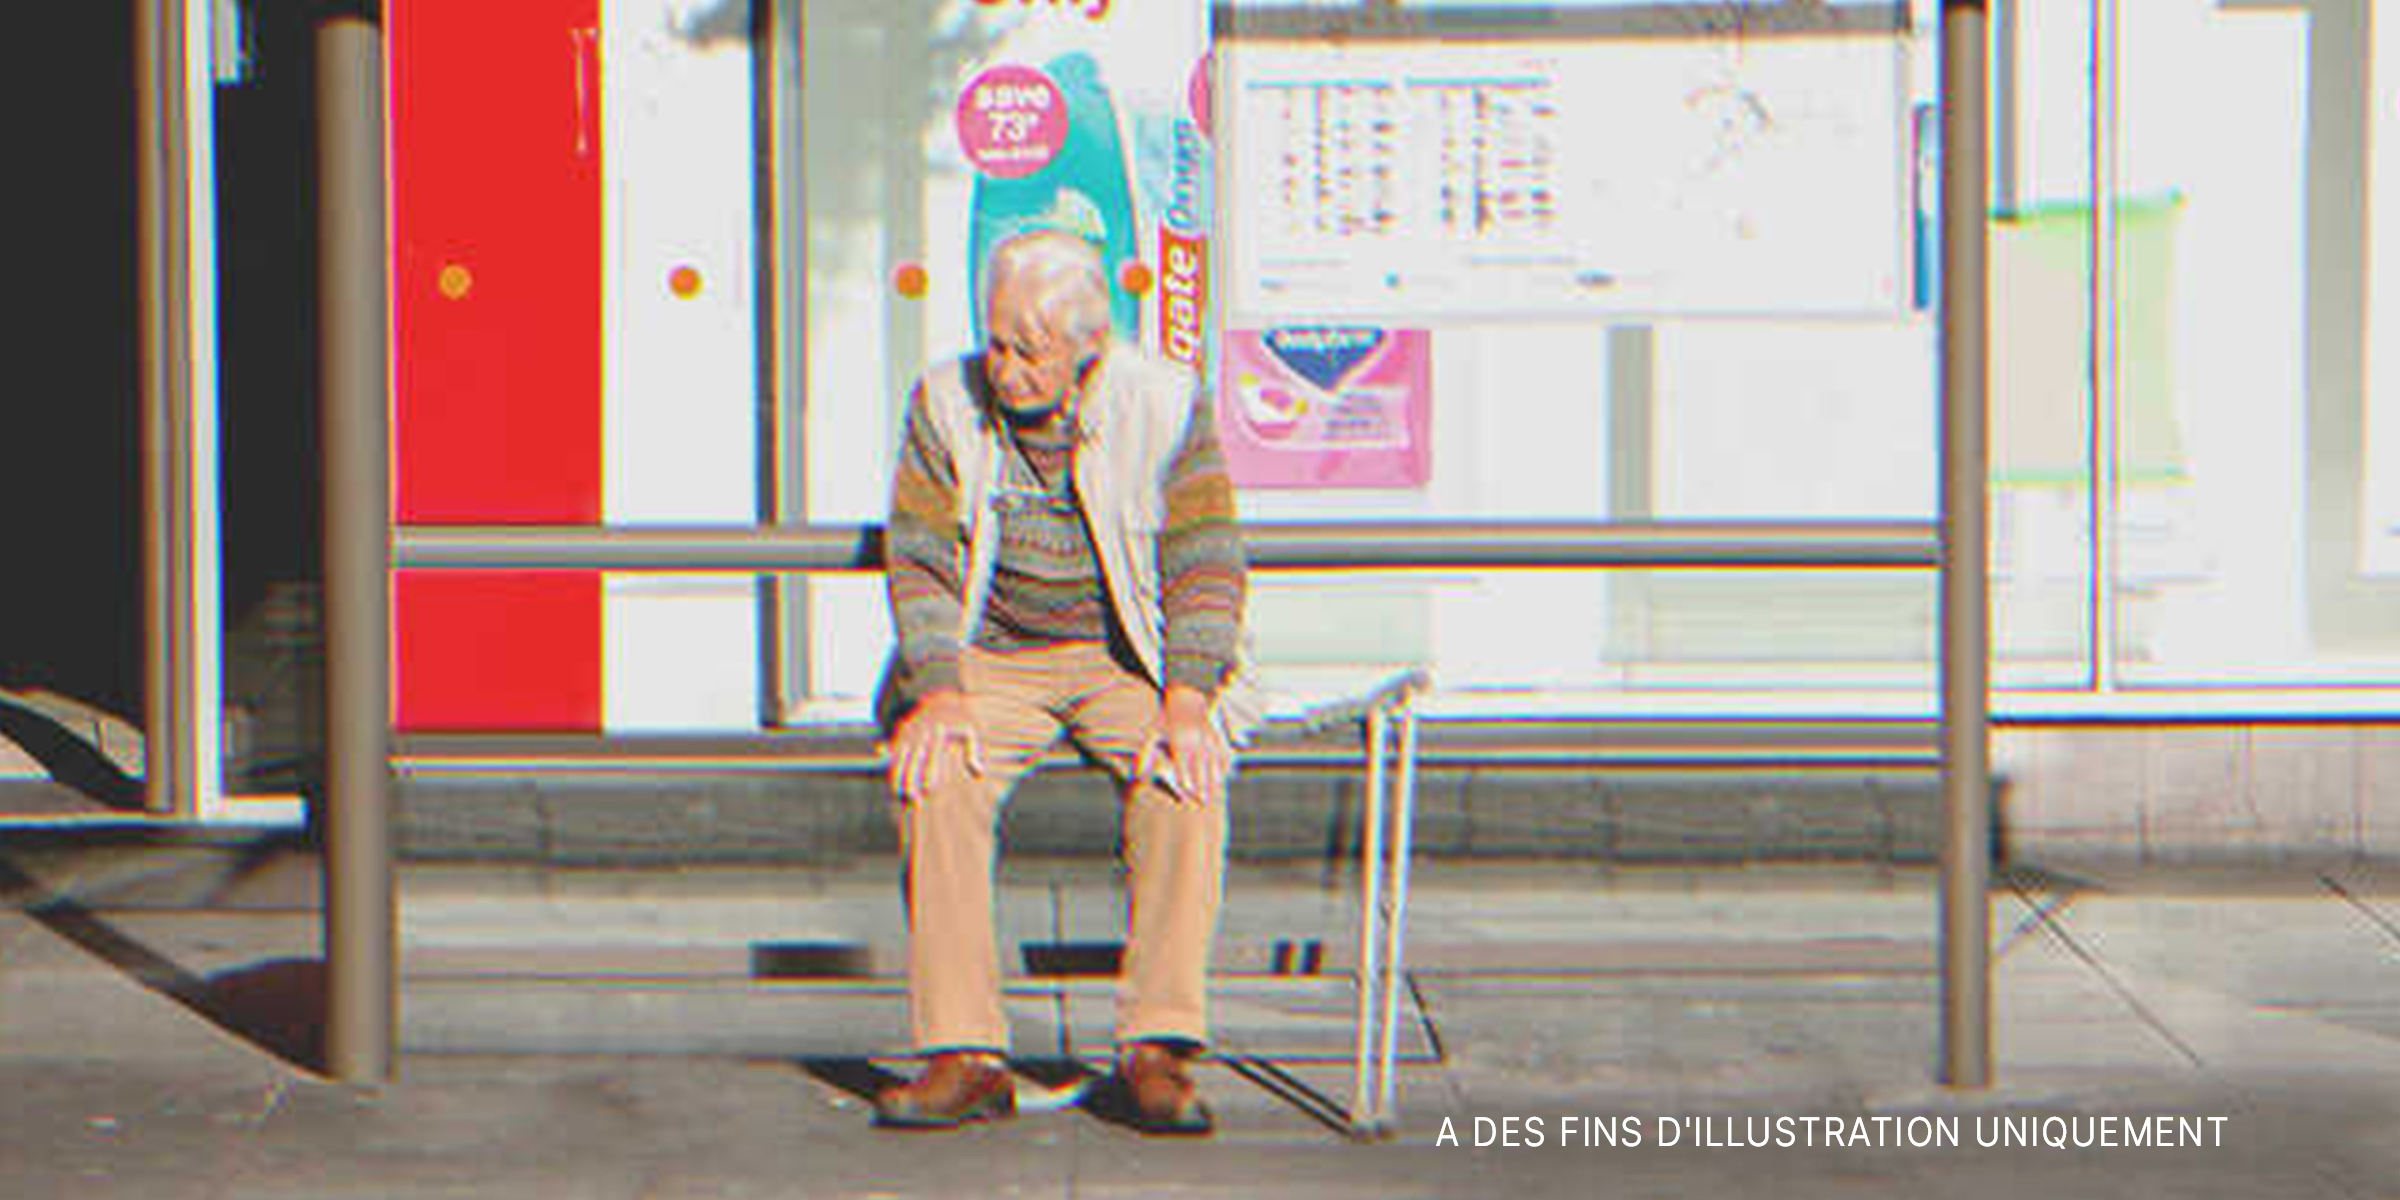 Un veil homme à un arrêt-bus | Source : Shutterstock